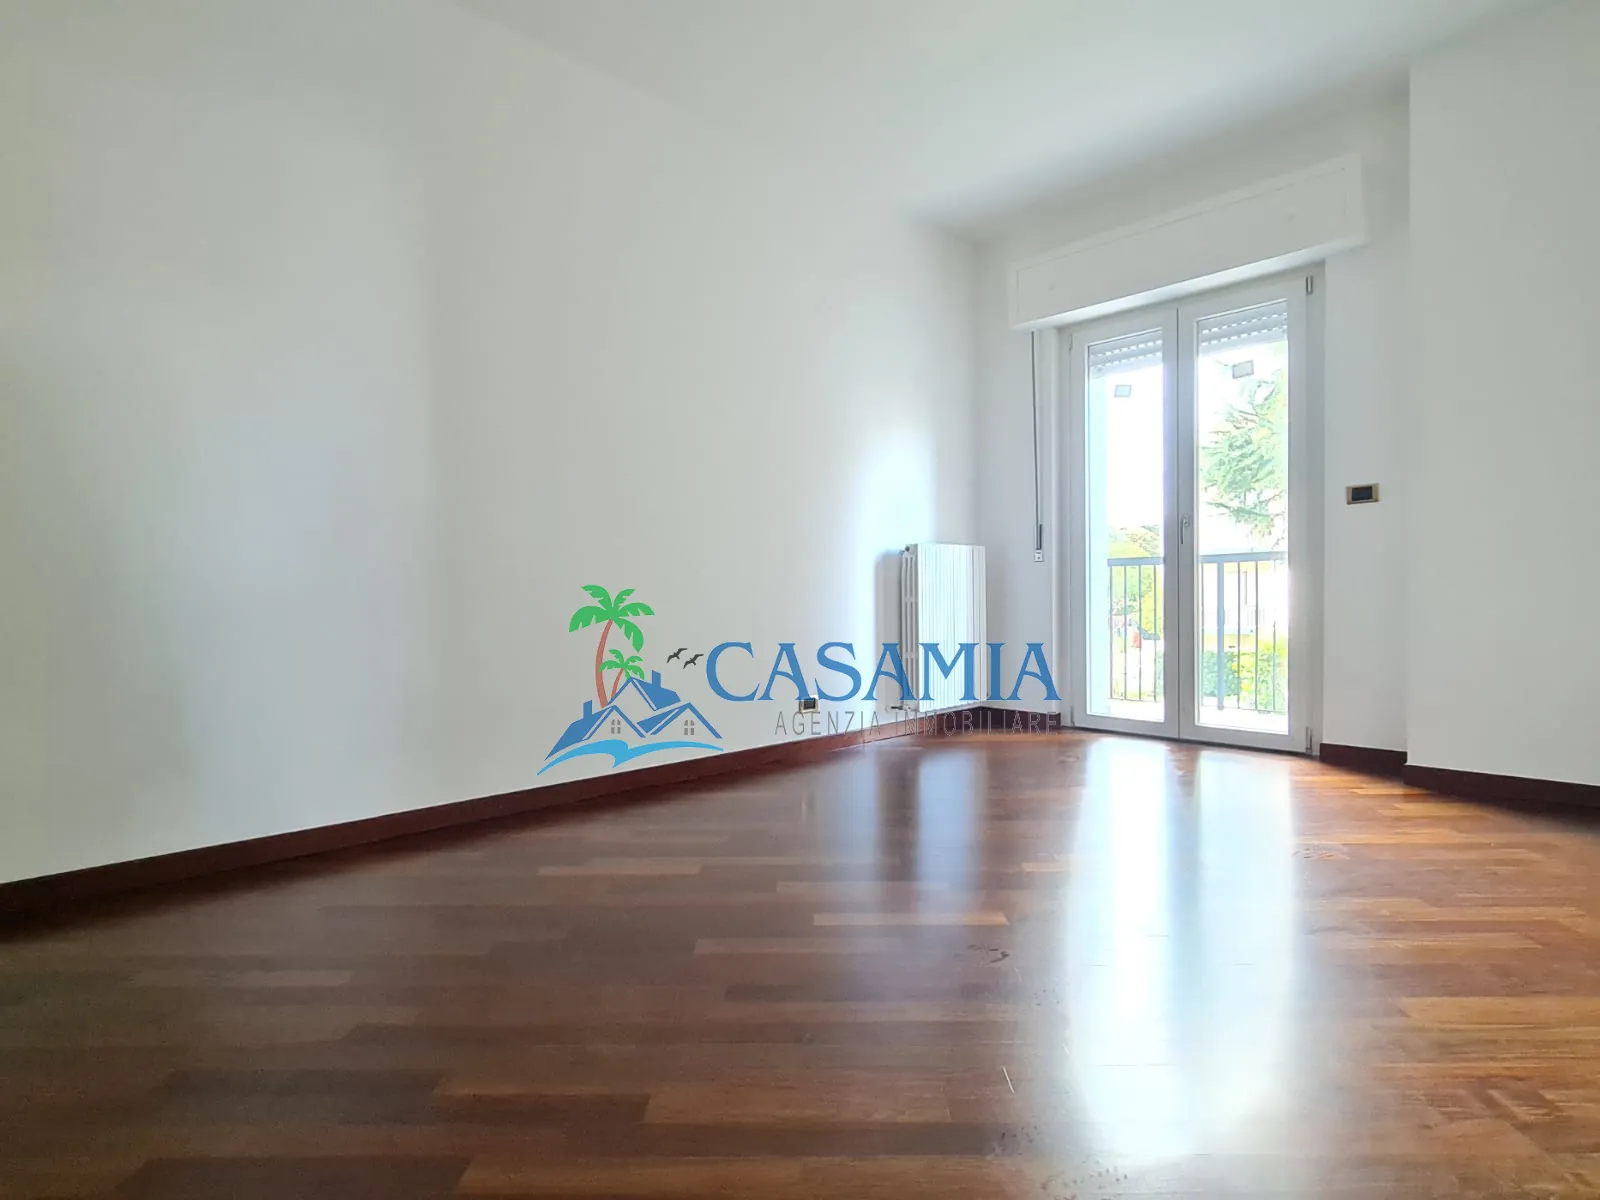 Immagine per Appartamento in vendita a Castel di Lama via Cesare Pavese